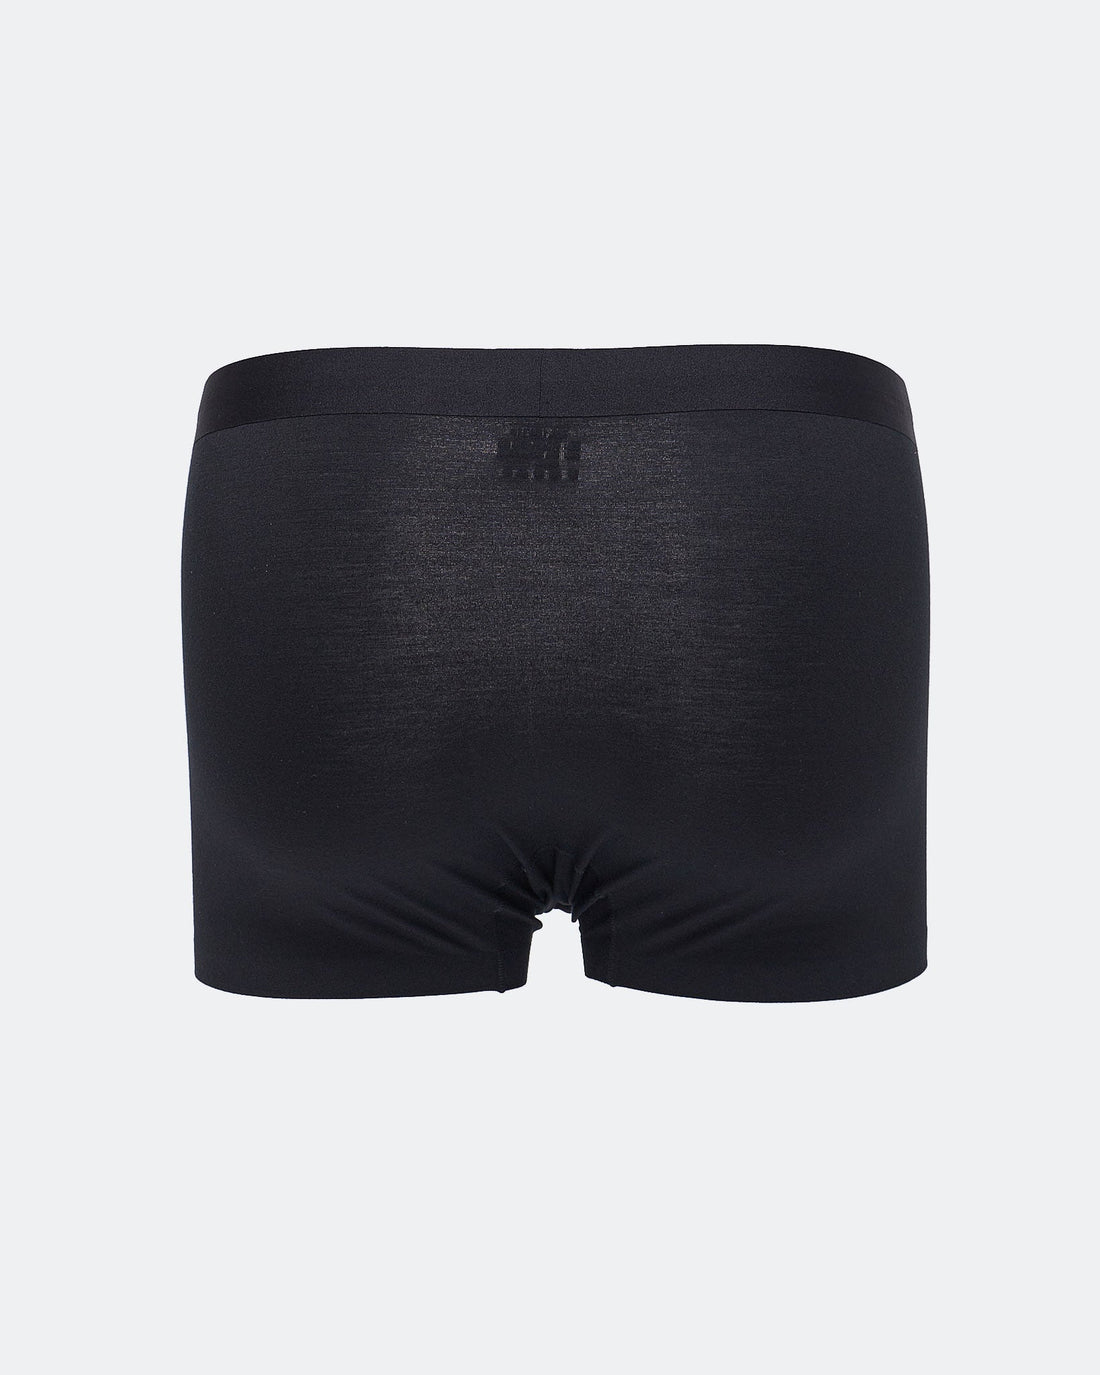 MOI OUTFIT-CK Waistband Men Underwear 6.90